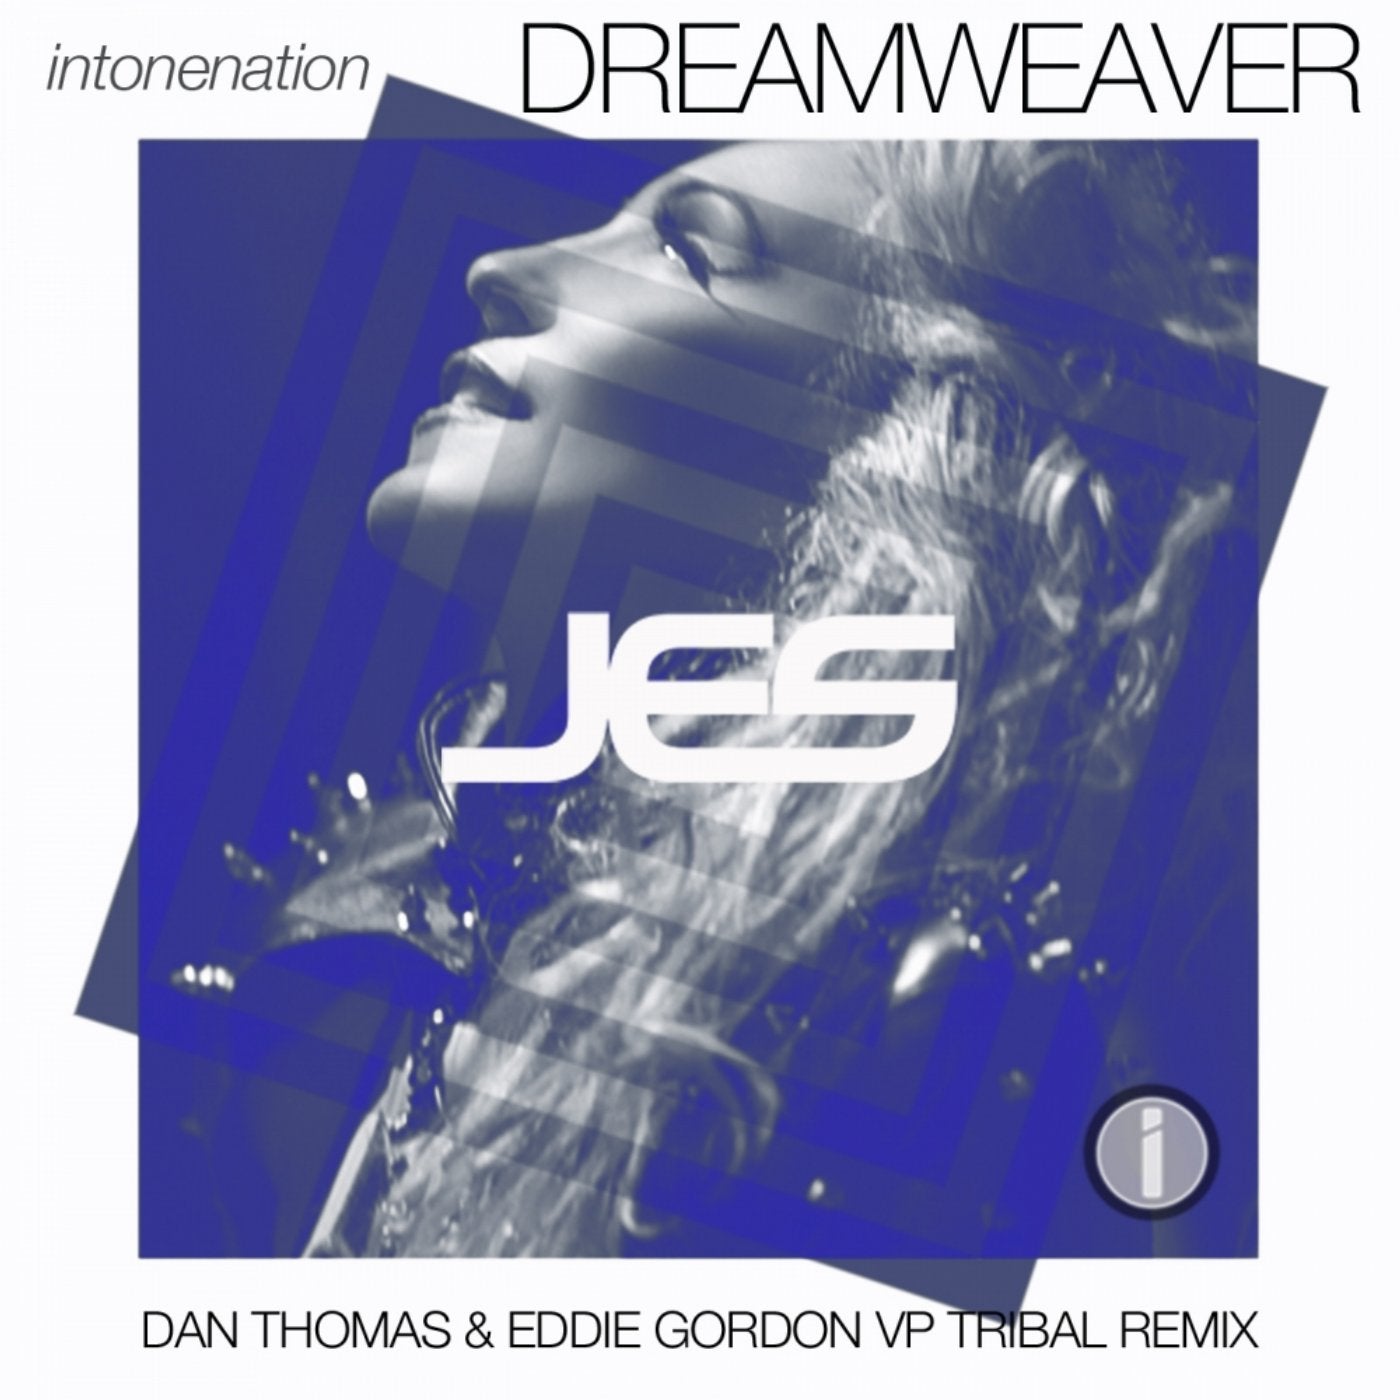 Dreamweaver (Dan Thomas & Eddie Gordon VP Tribal Remix)